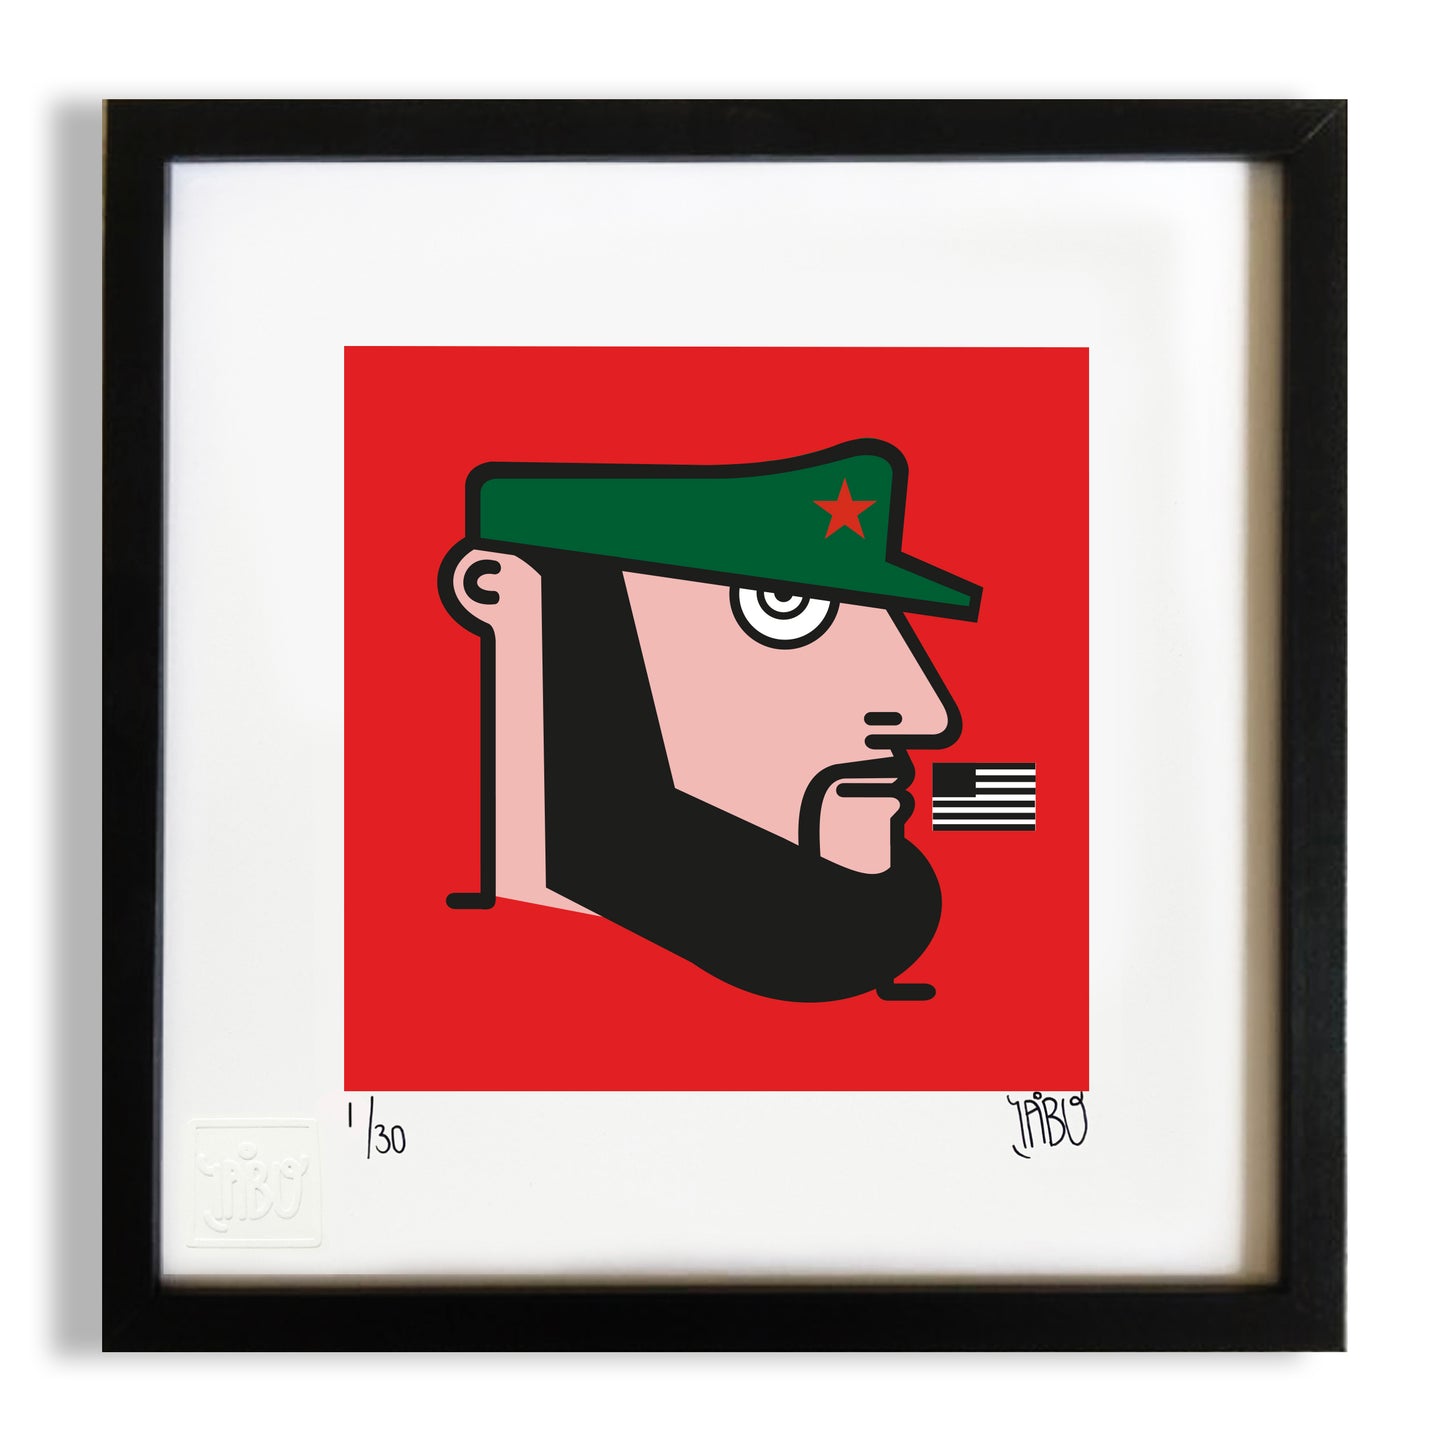 "Fidel" (Fidel Castro)